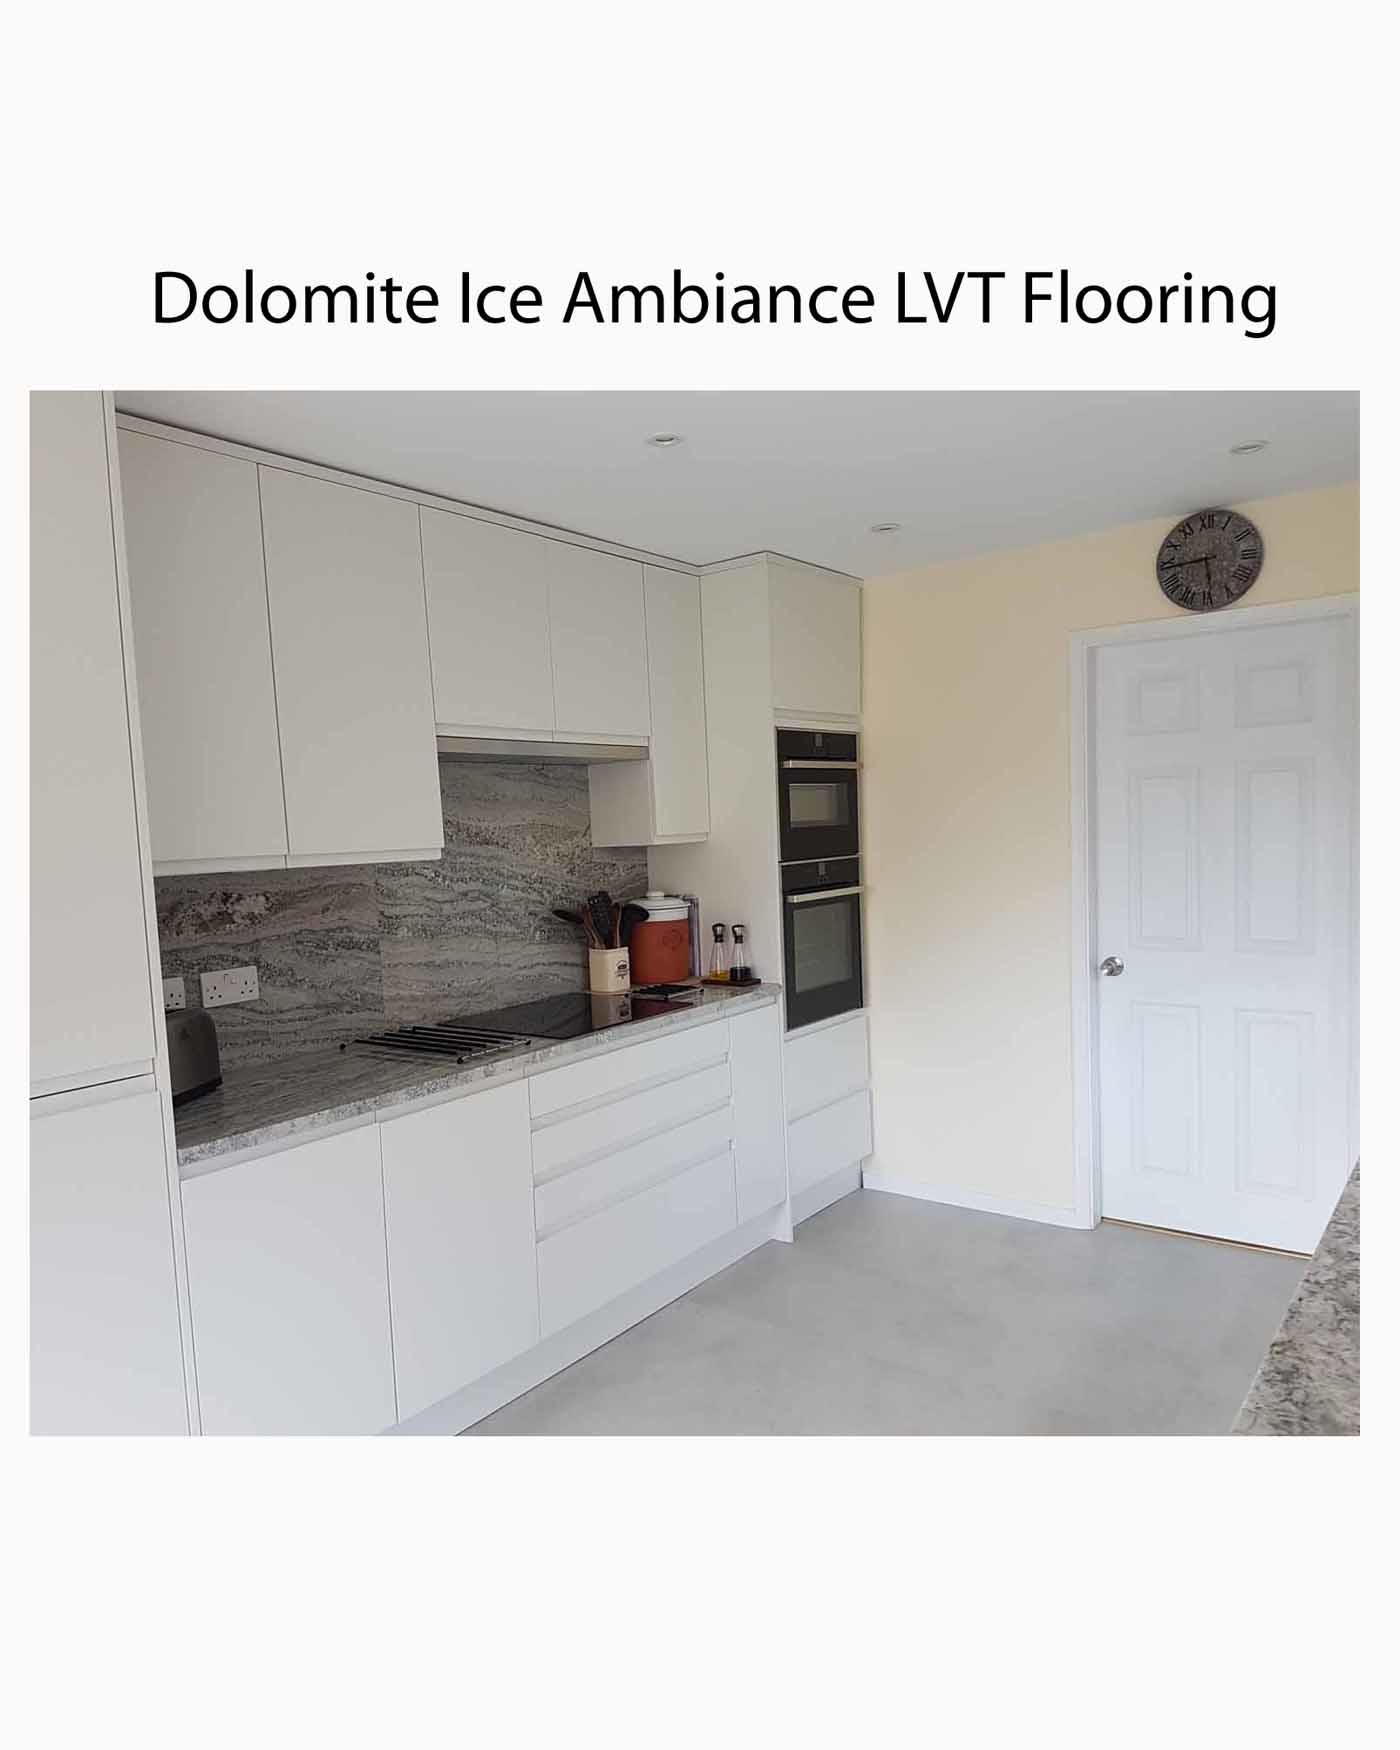 Dolomite Ice Ambiance Flooring